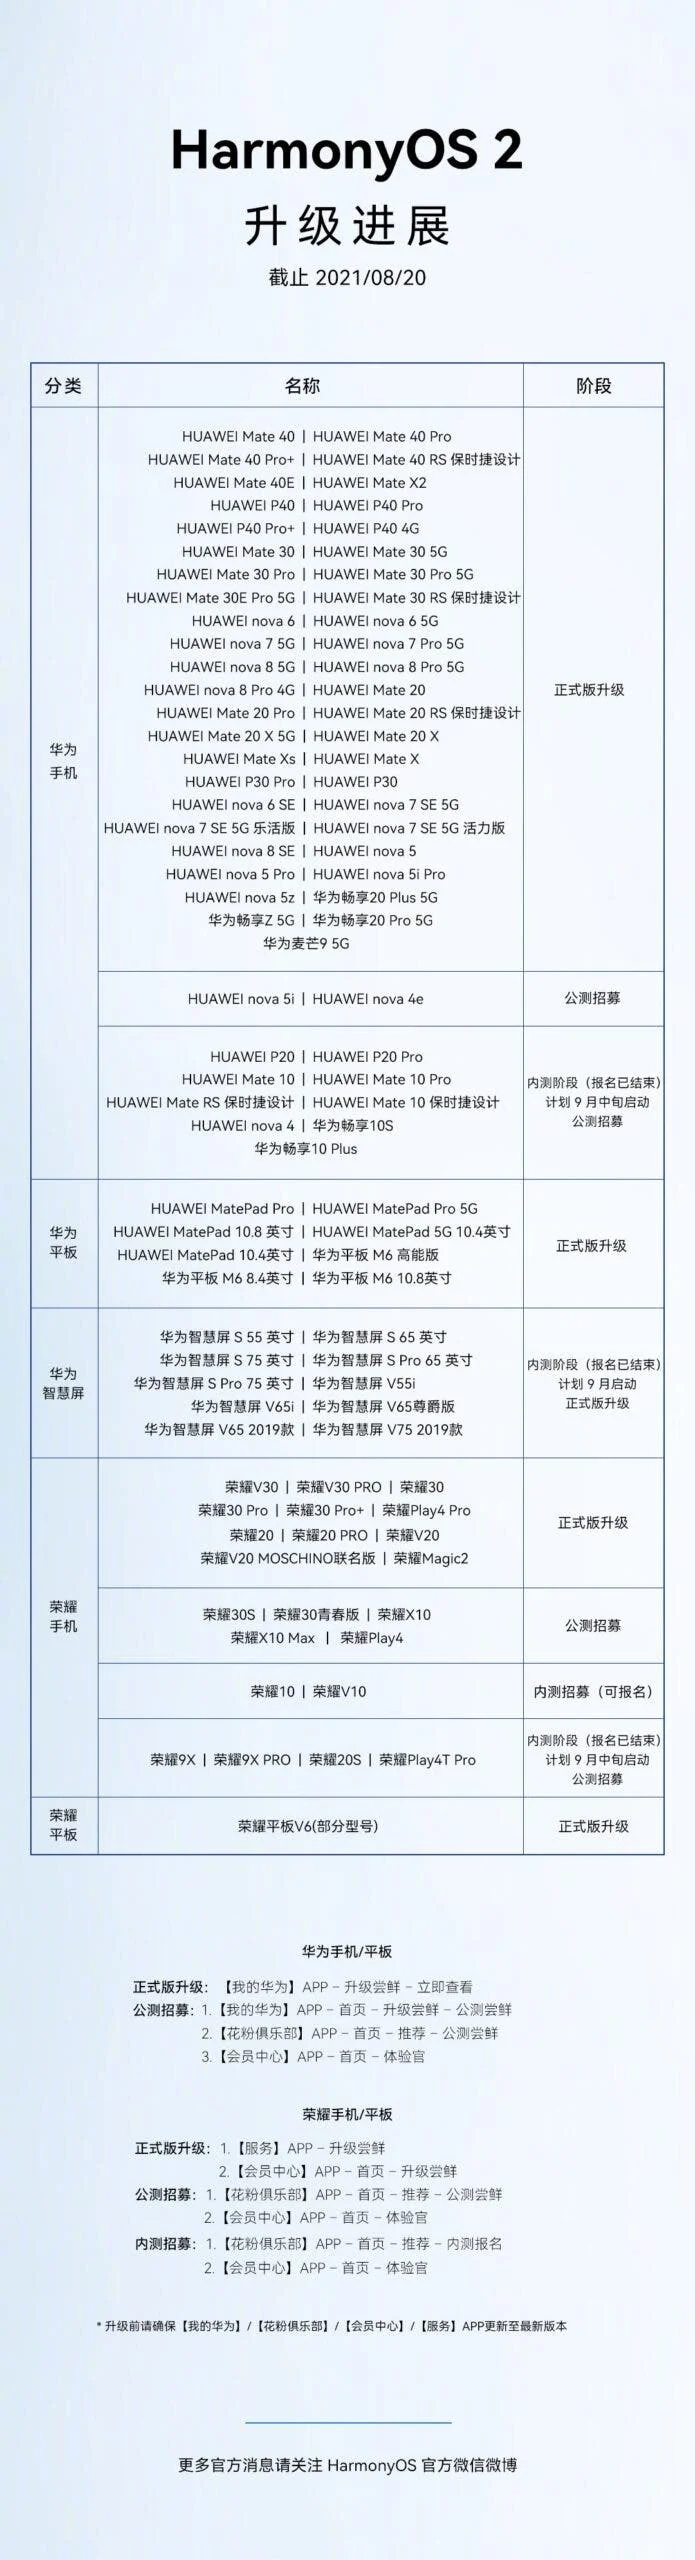 Huawei сообщила об установке Harmony OS 2.0 на 100 моделей мобильных устройств - фото 1